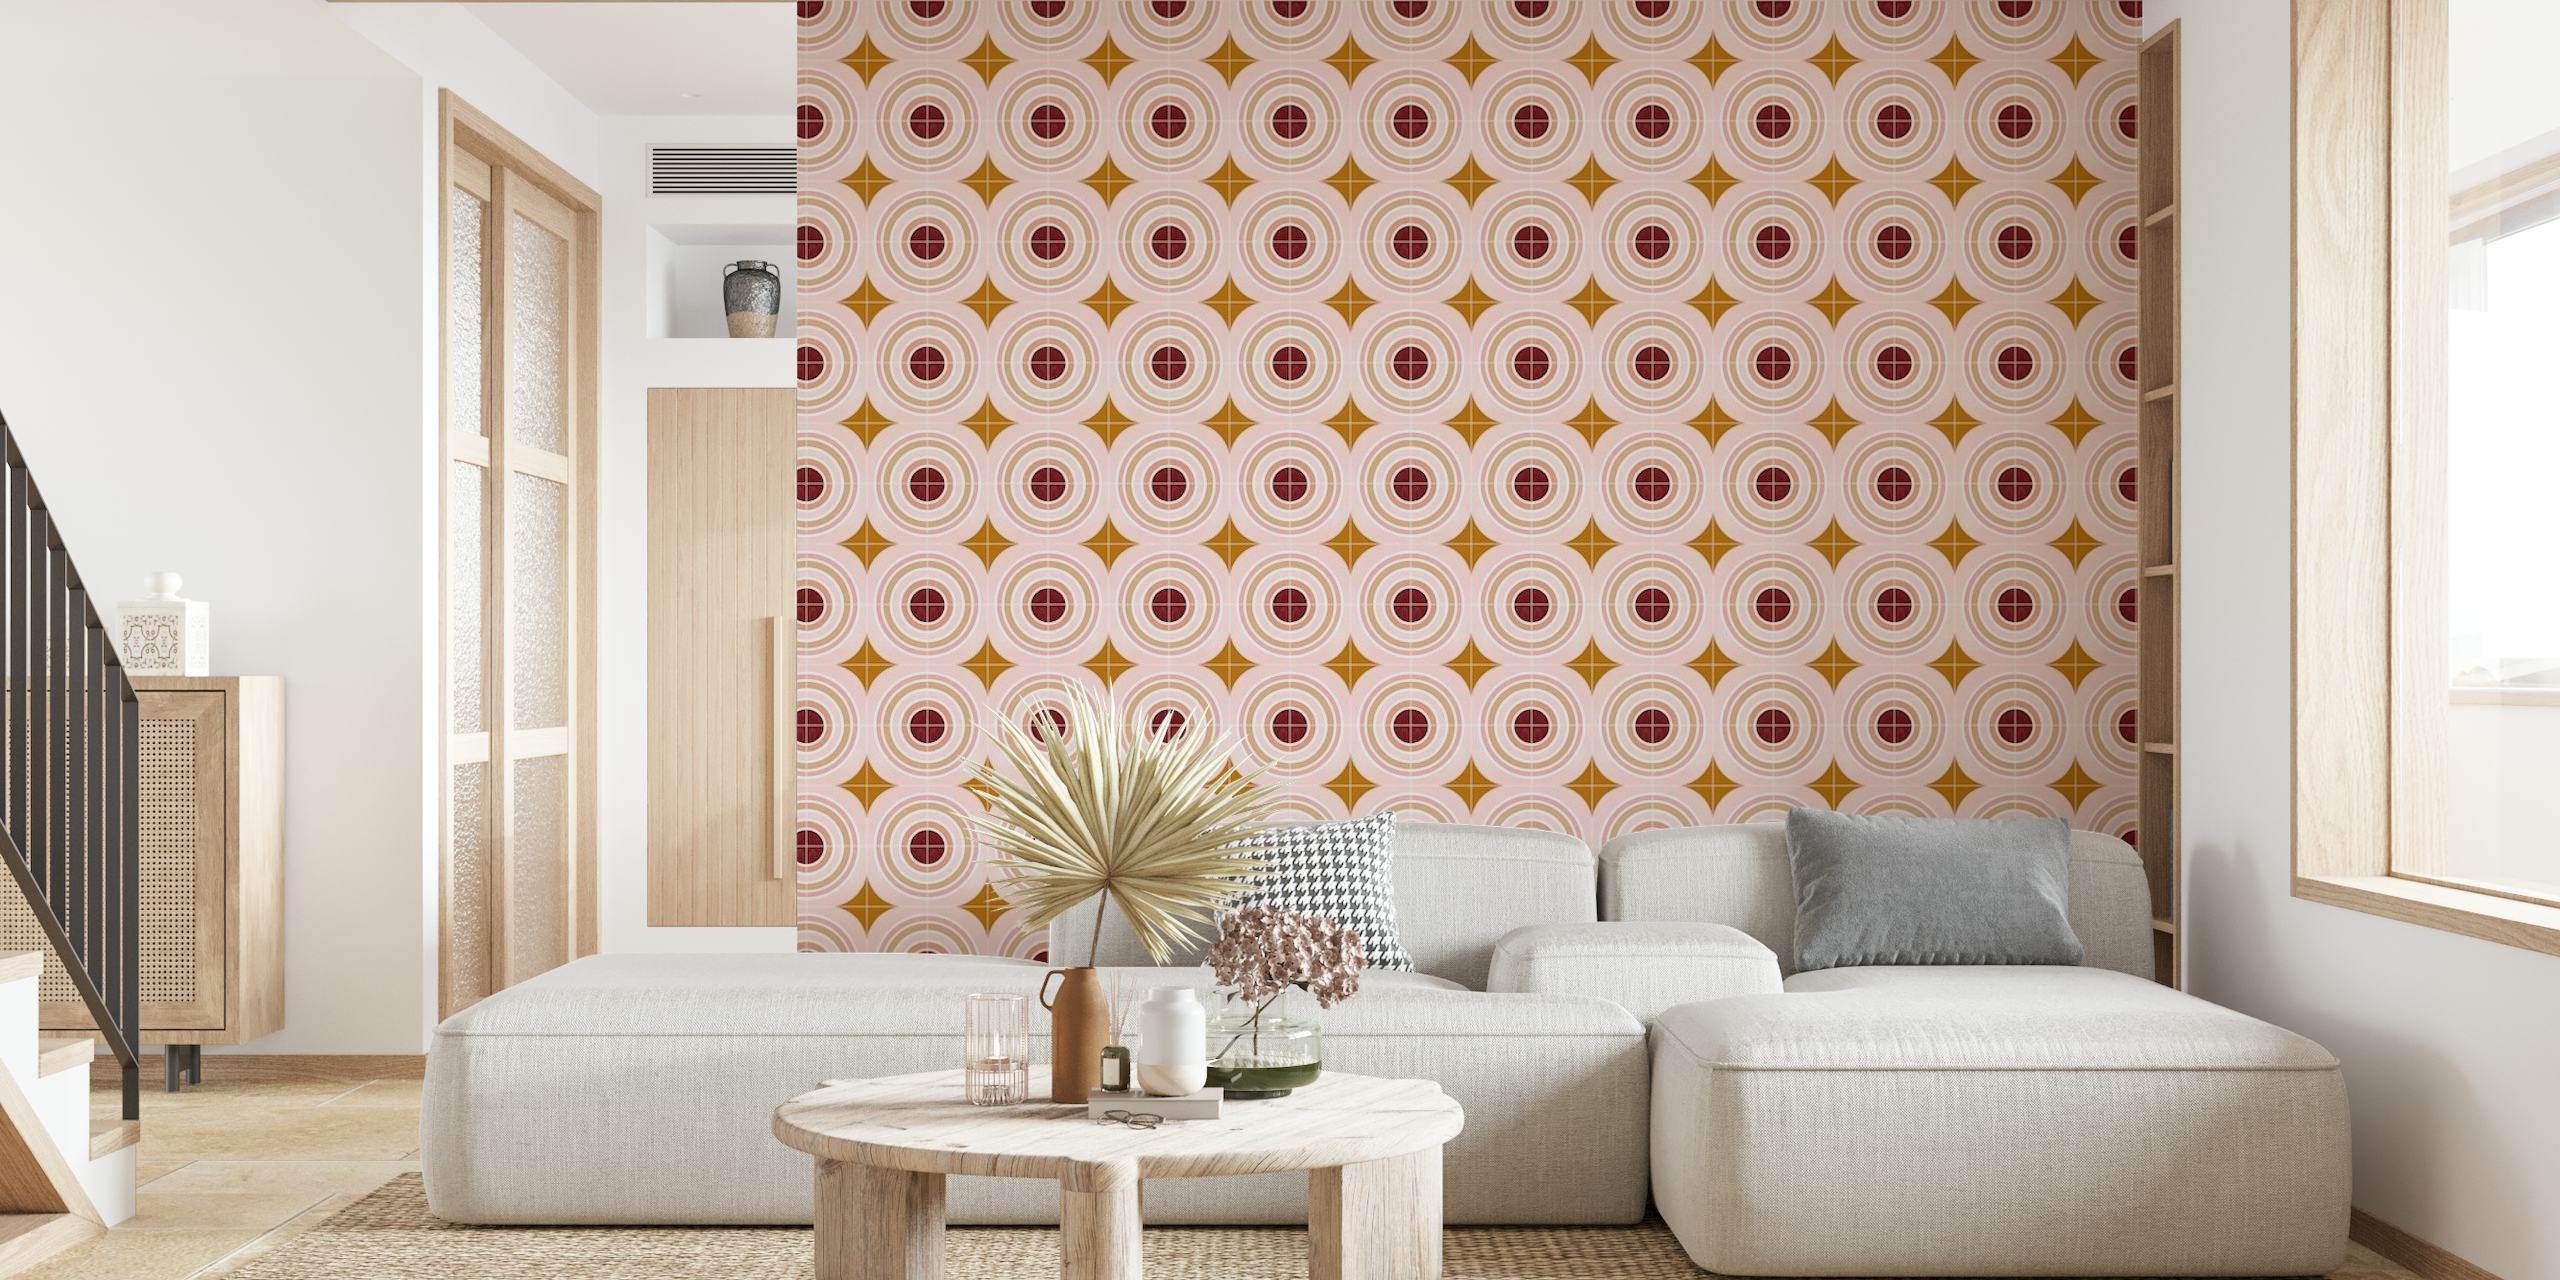 Fototapeta Target Tiles z koncentrycznymi wzorami kół w delikatnych odcieniach różu i złota